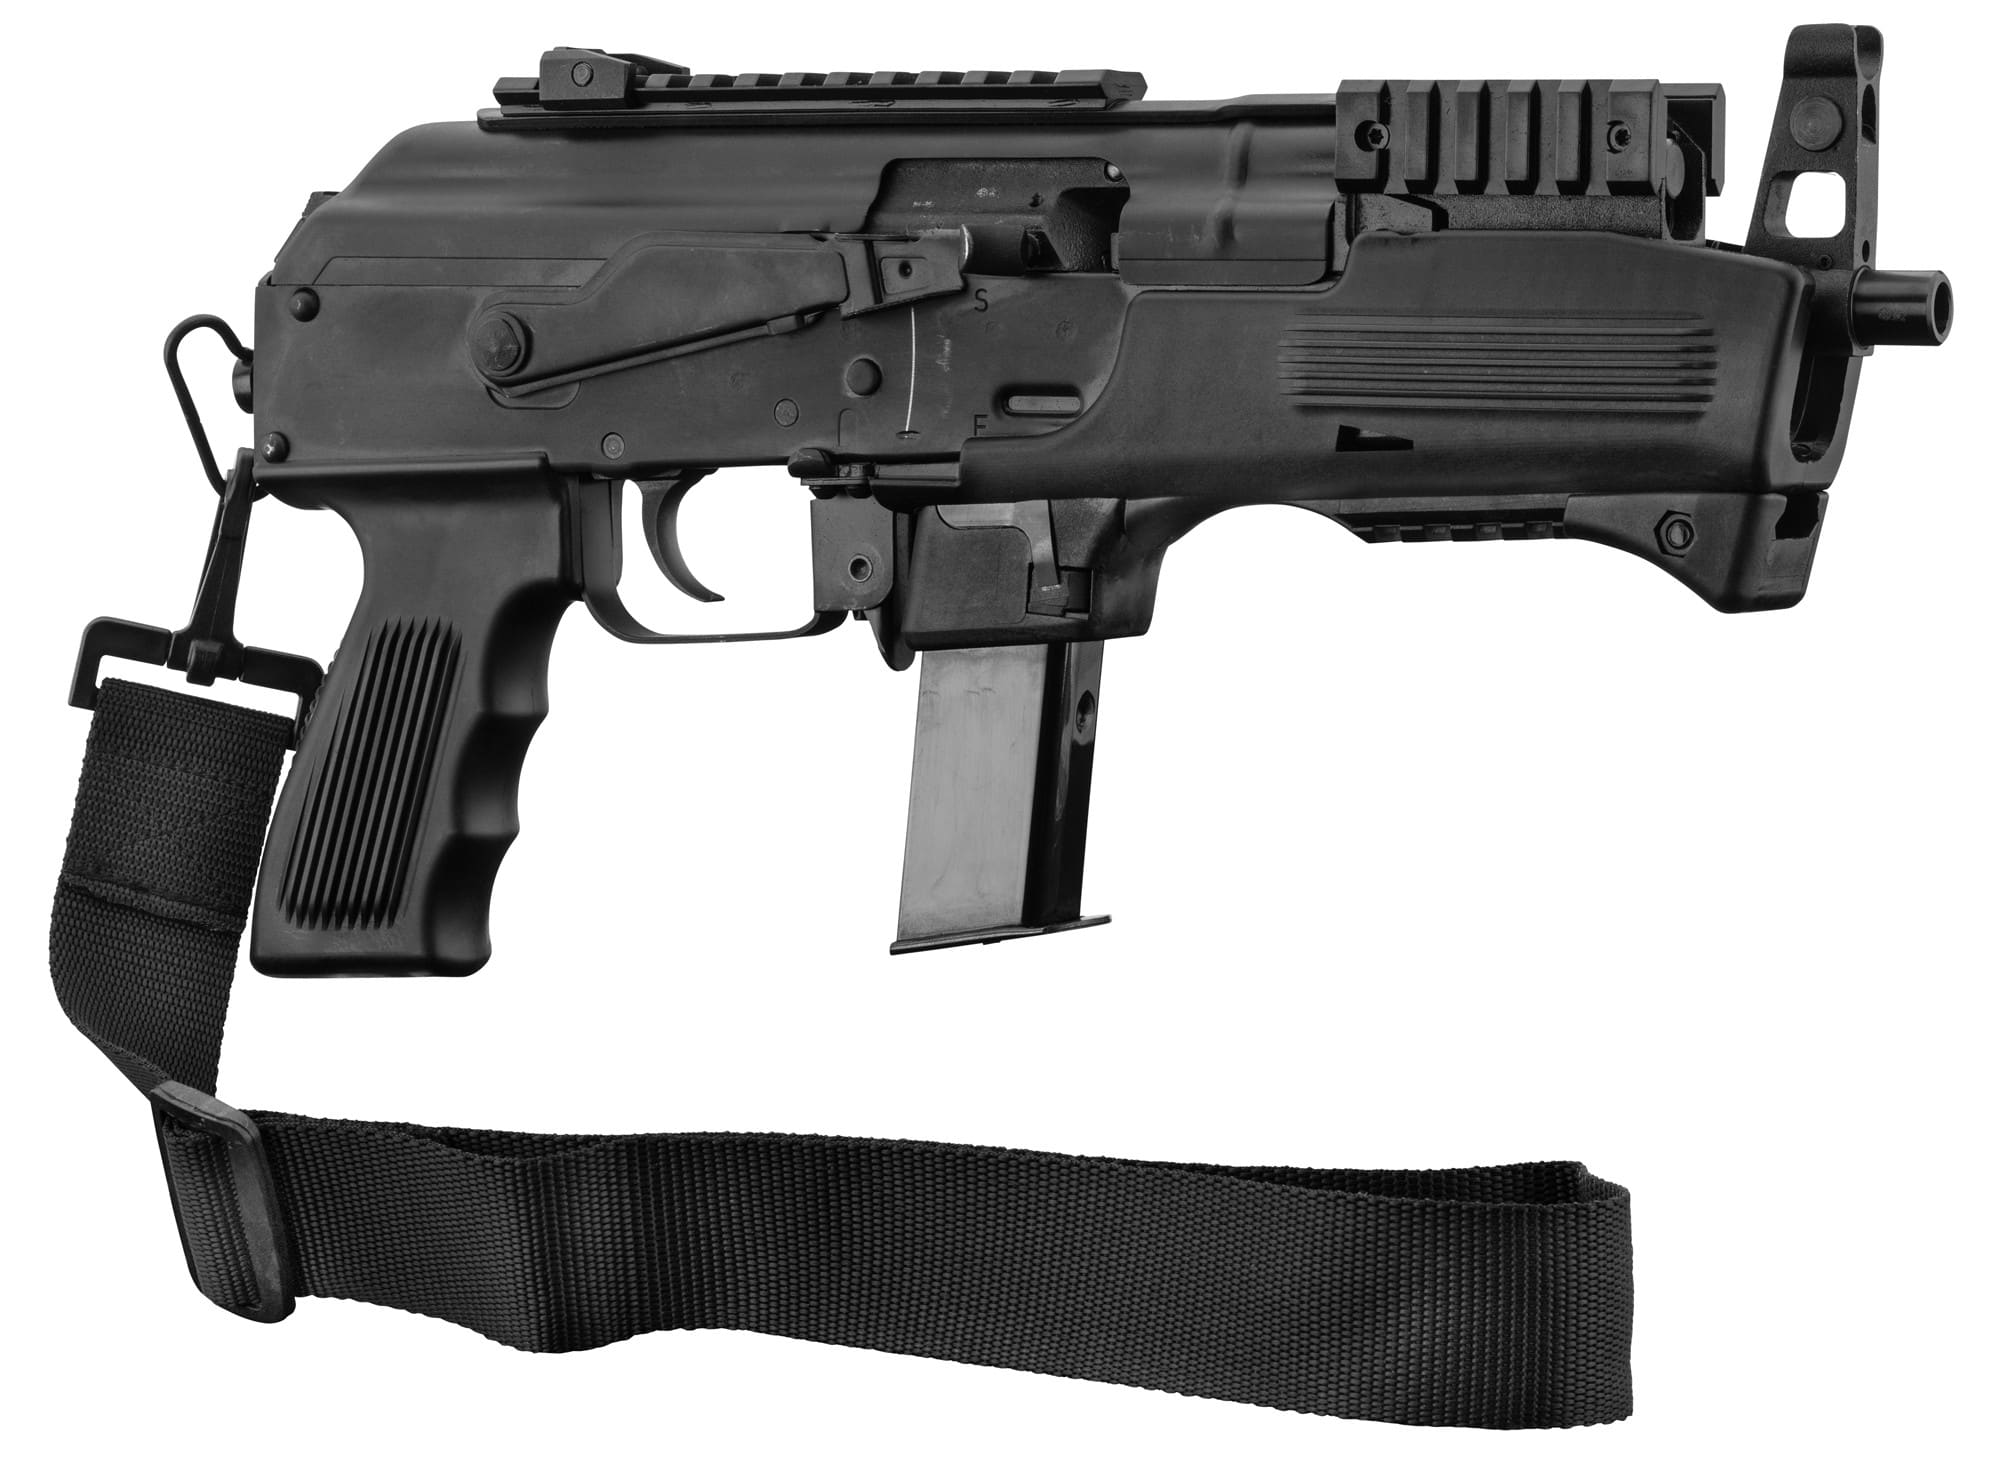 Pistolet 9 mm PAK à blanc Chiappa 92green sur notre armurerie en ligne